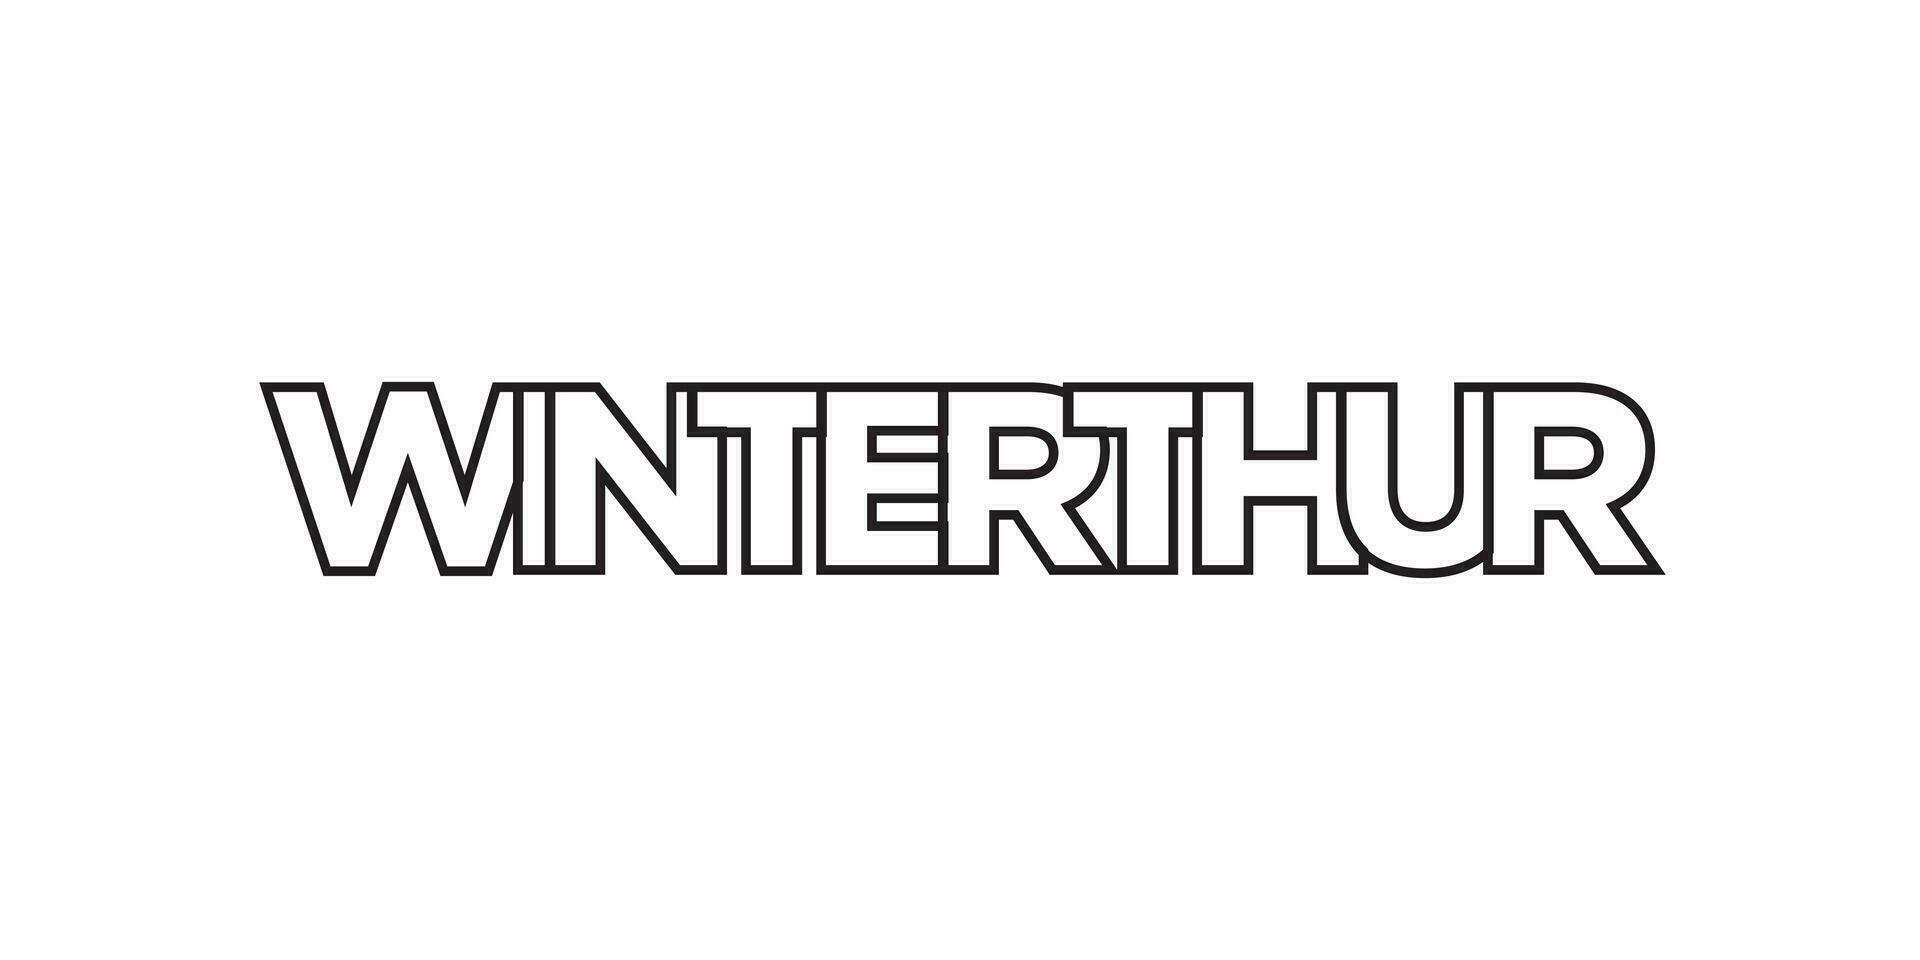 Winterthur dans le Suisse emblème. le conception Caractéristiques une géométrique style, vecteur illustration avec audacieux typographie dans une moderne Police de caractère. le graphique slogan caractères.